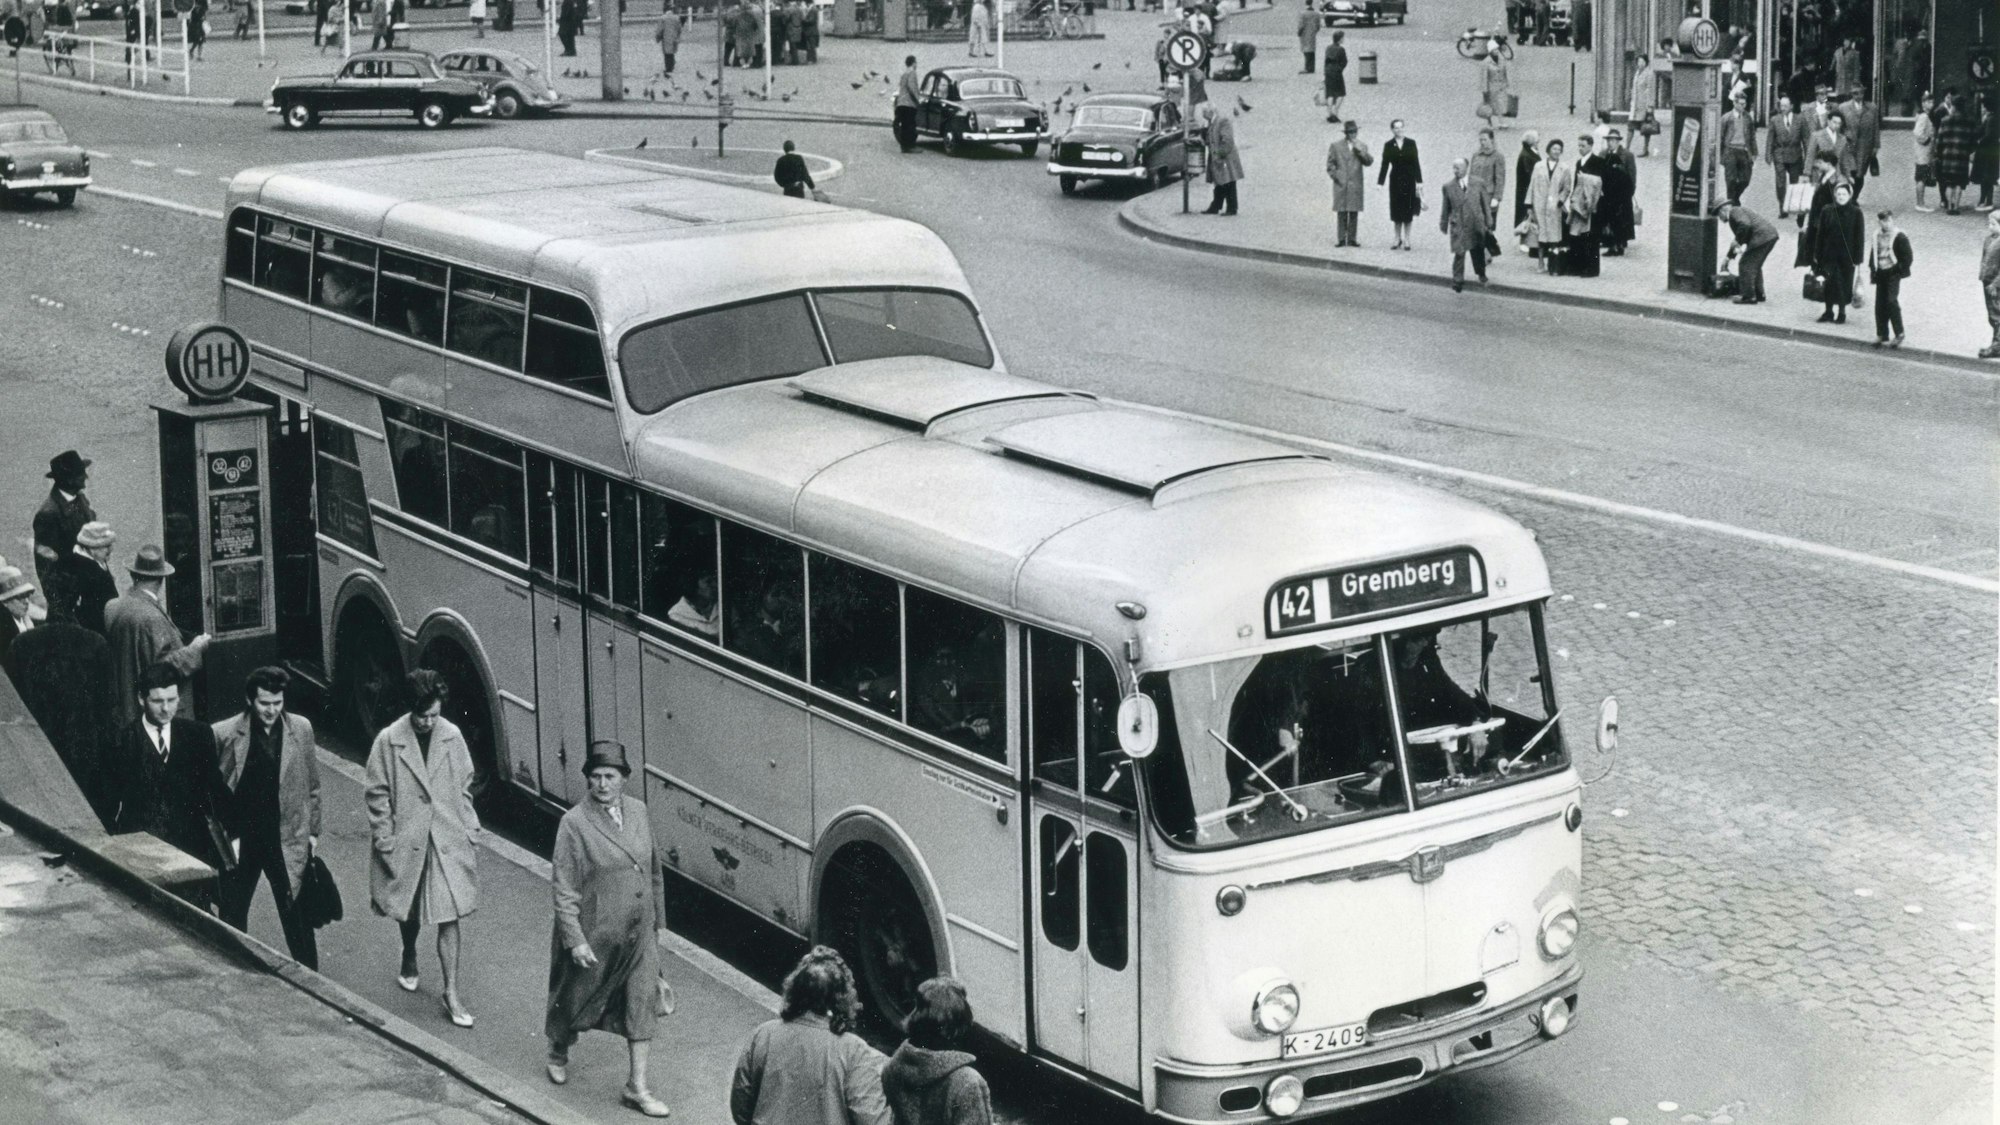 1961, Köln: Ein Bus vom Typ Büssing/Ludewig wartet auf der Trankgasse am Hauptbahnhof.